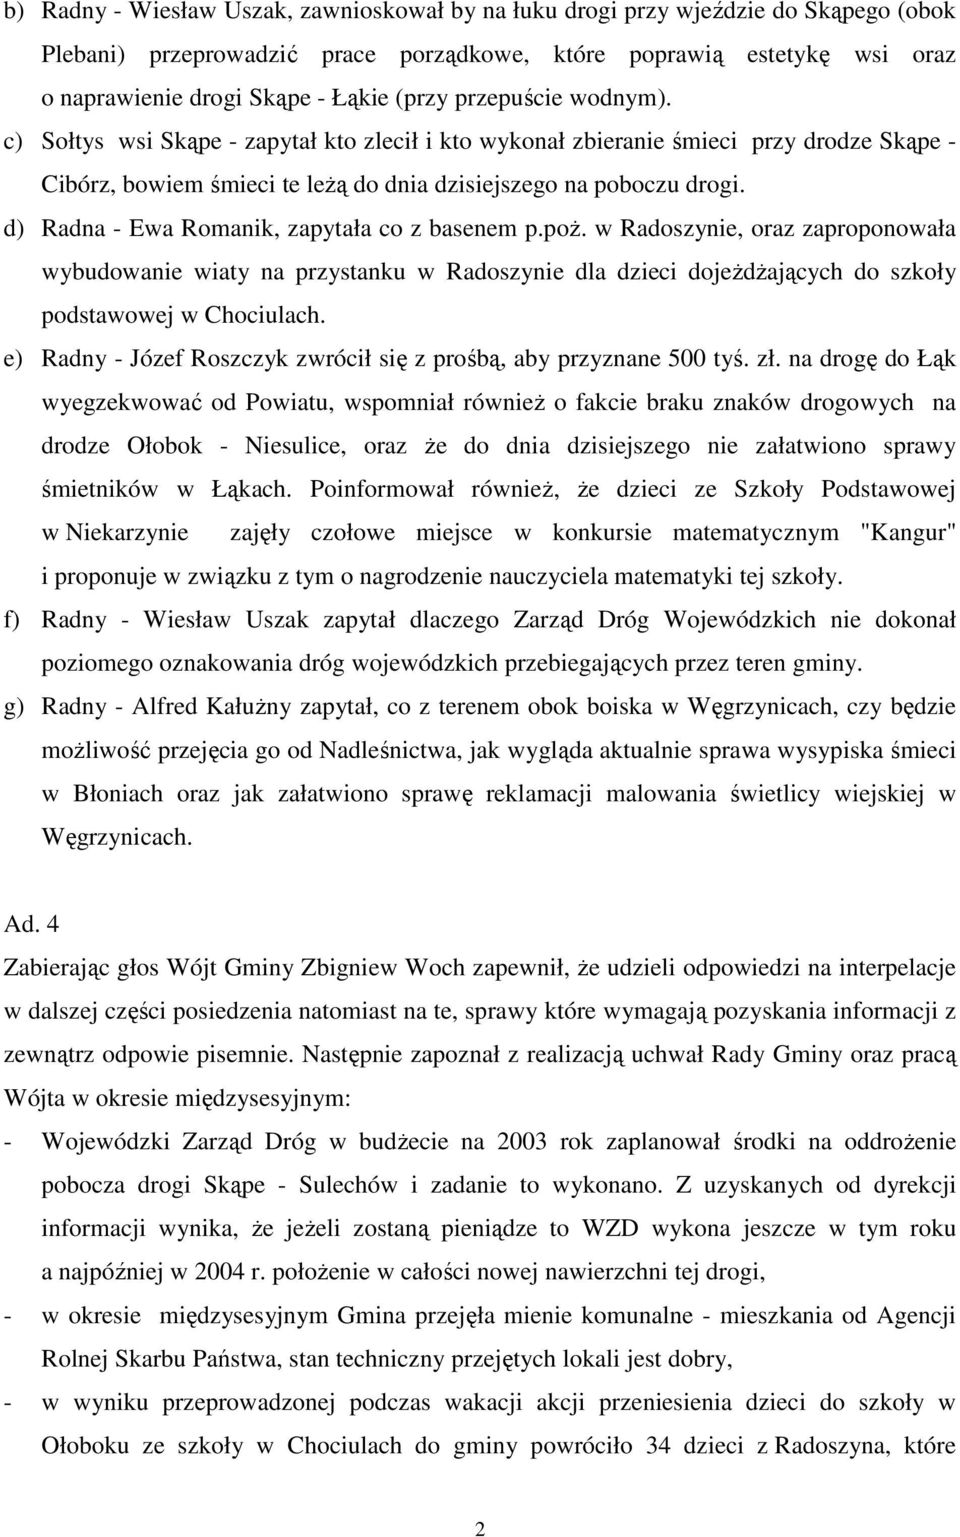 d) Radna - Ewa Romanik, zapytała co z basenem p.poŝ. w Radoszynie, oraz zaproponowała wybudowanie wiaty na przystanku w Radoszynie dla dzieci dojeŝdŝających do szkoły podstawowej w Chociulach.